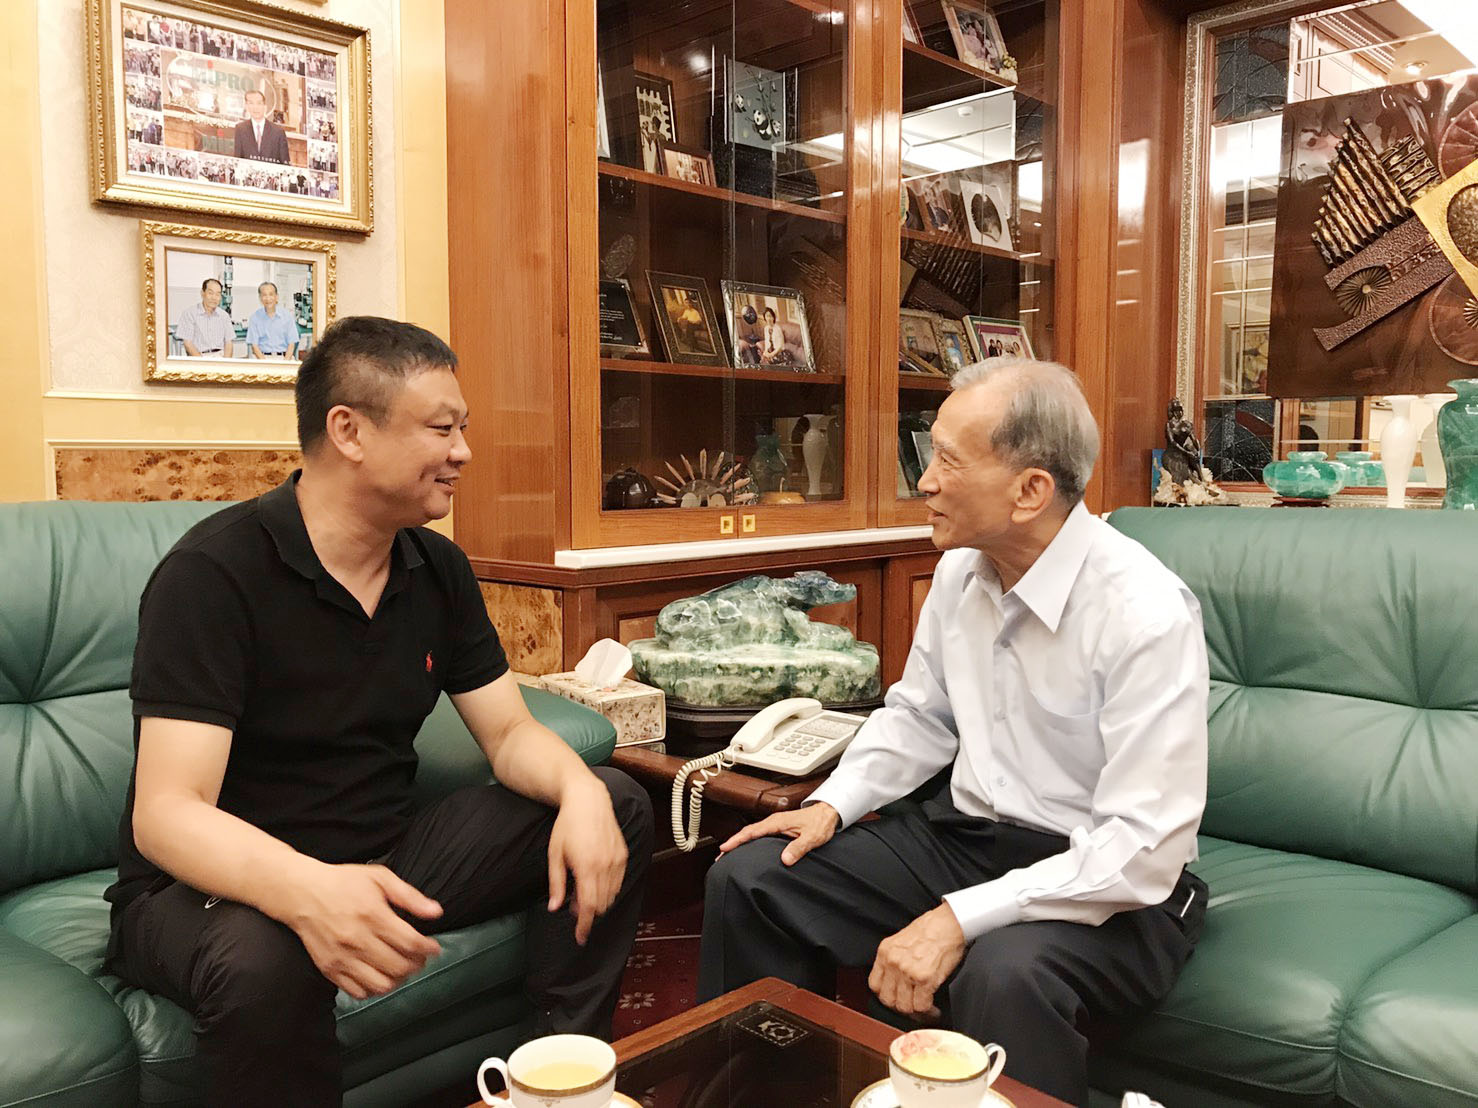 中國資深調音師MaxTeam創始人邵勇老師來到MIPRO台灣總部參觀交流